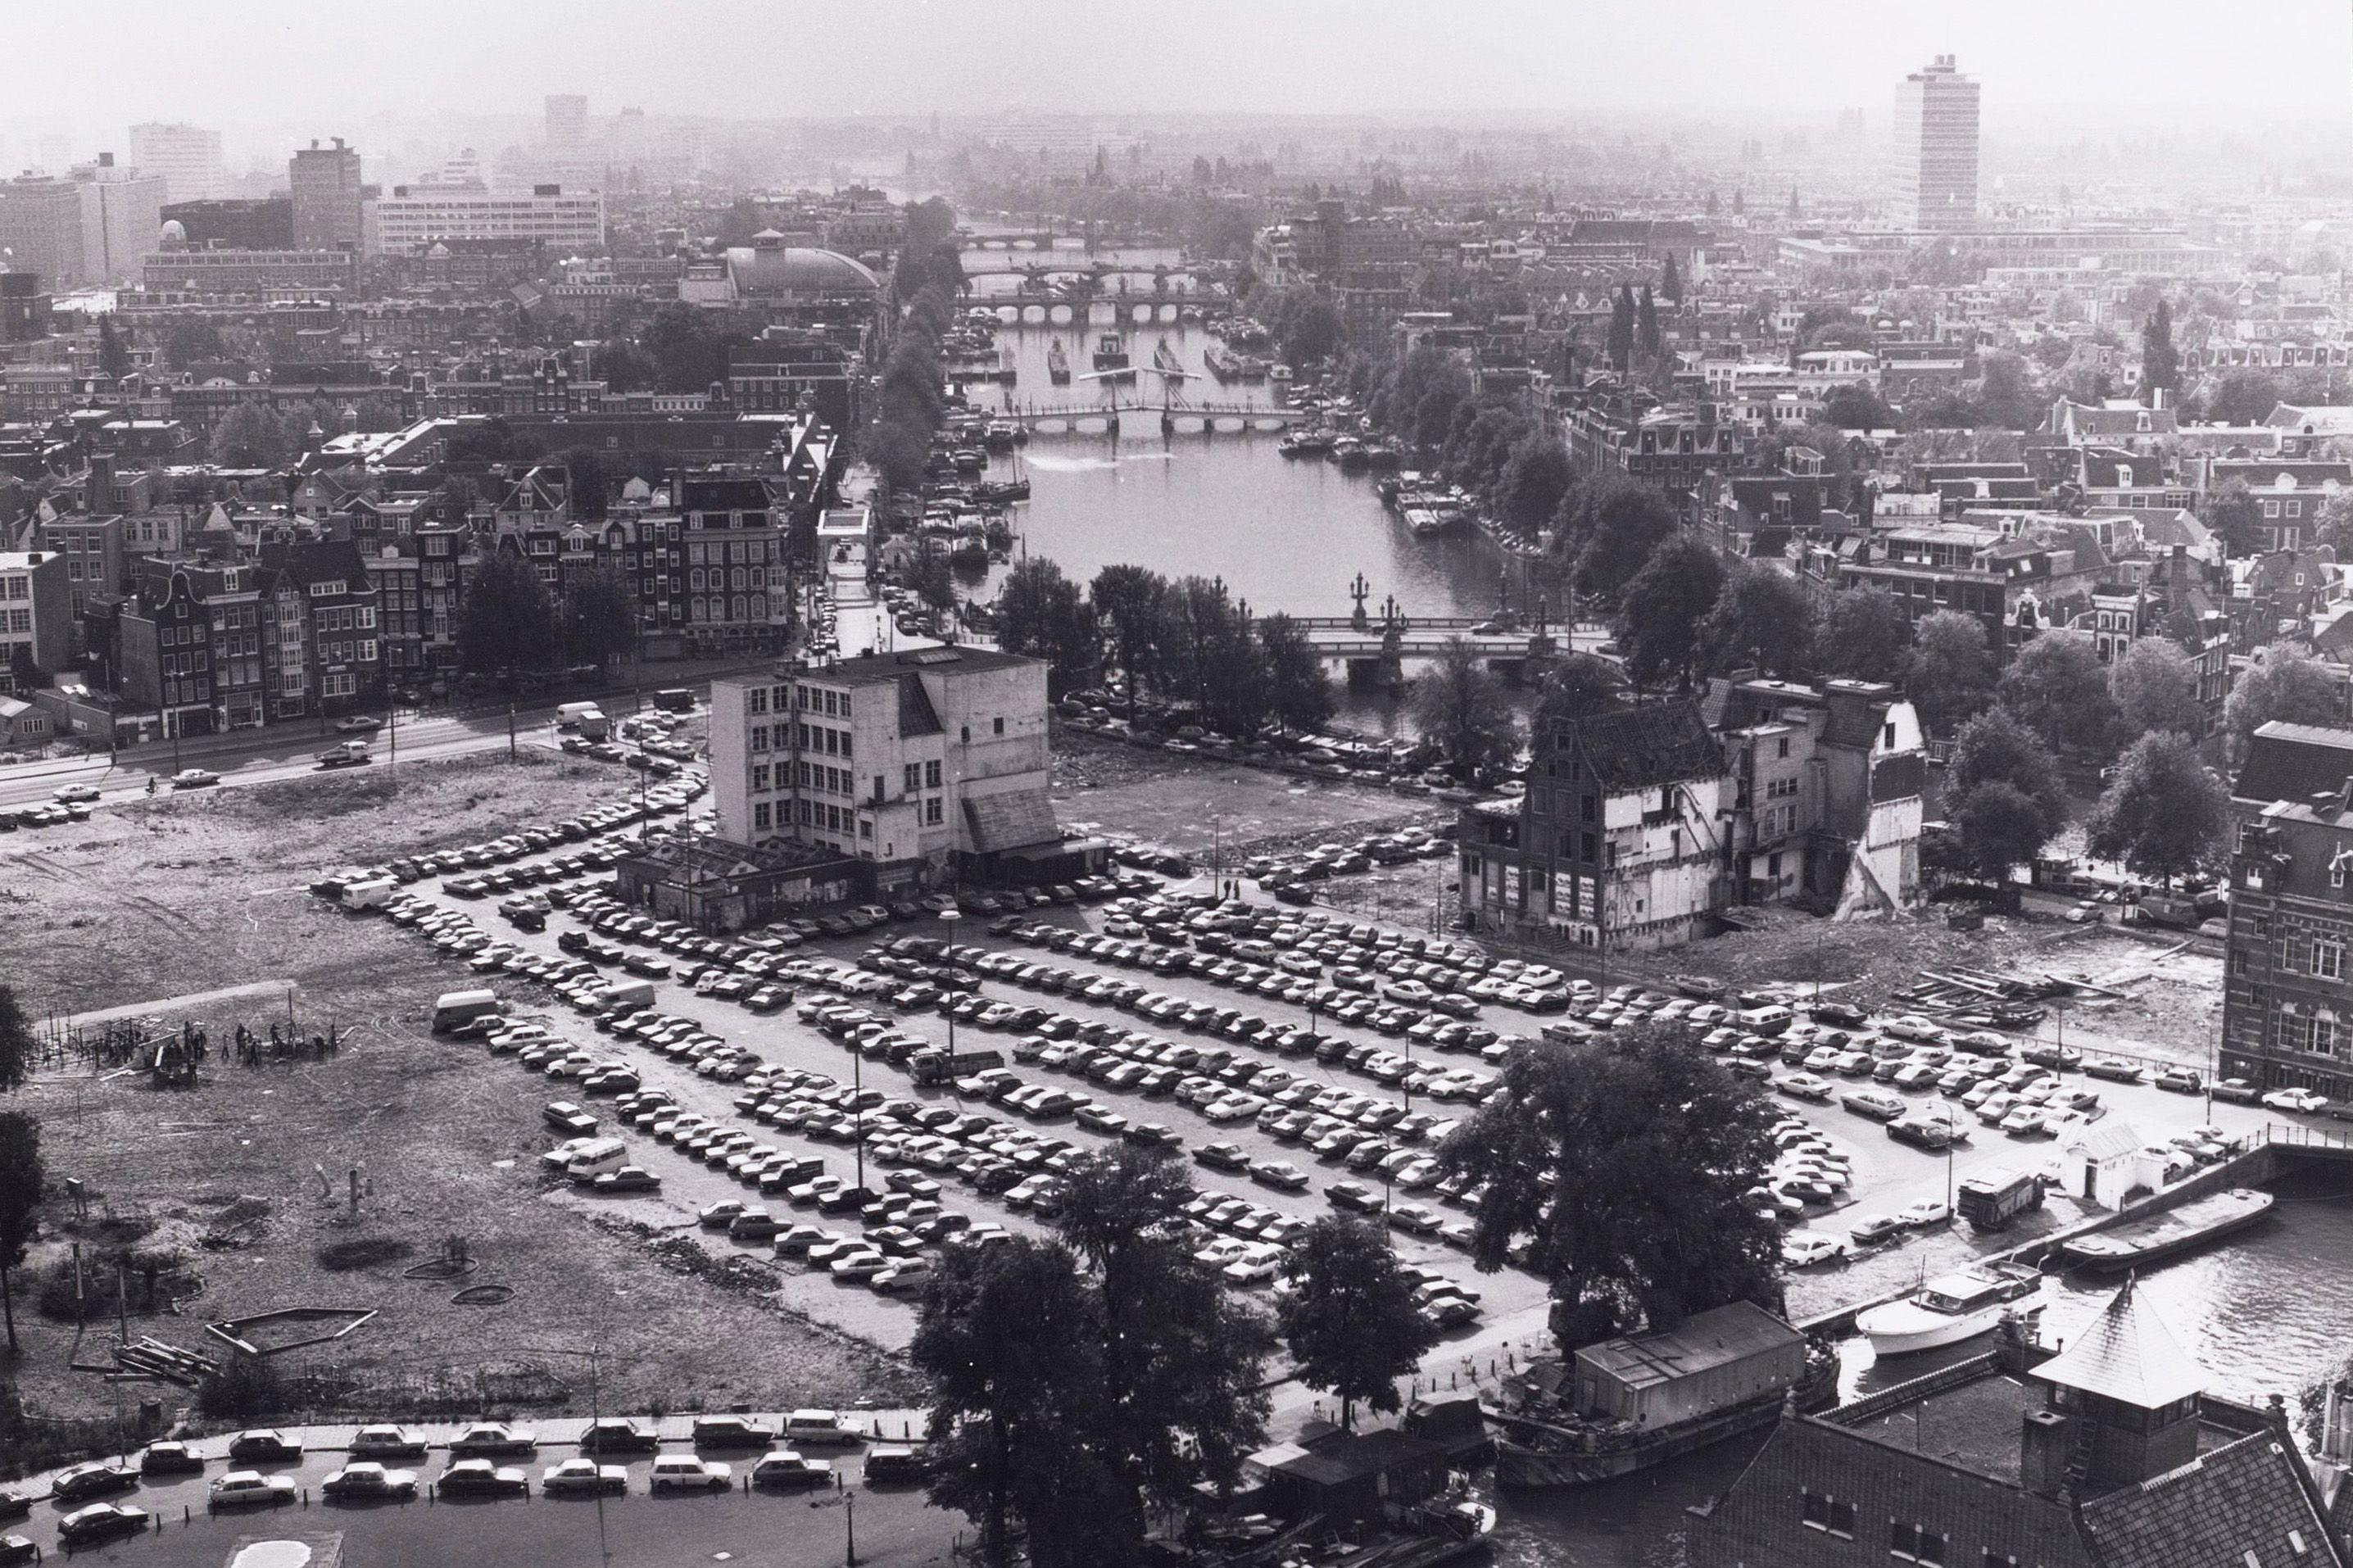 Blik op de stad: parkeren op het Waterlooplein, 1978.